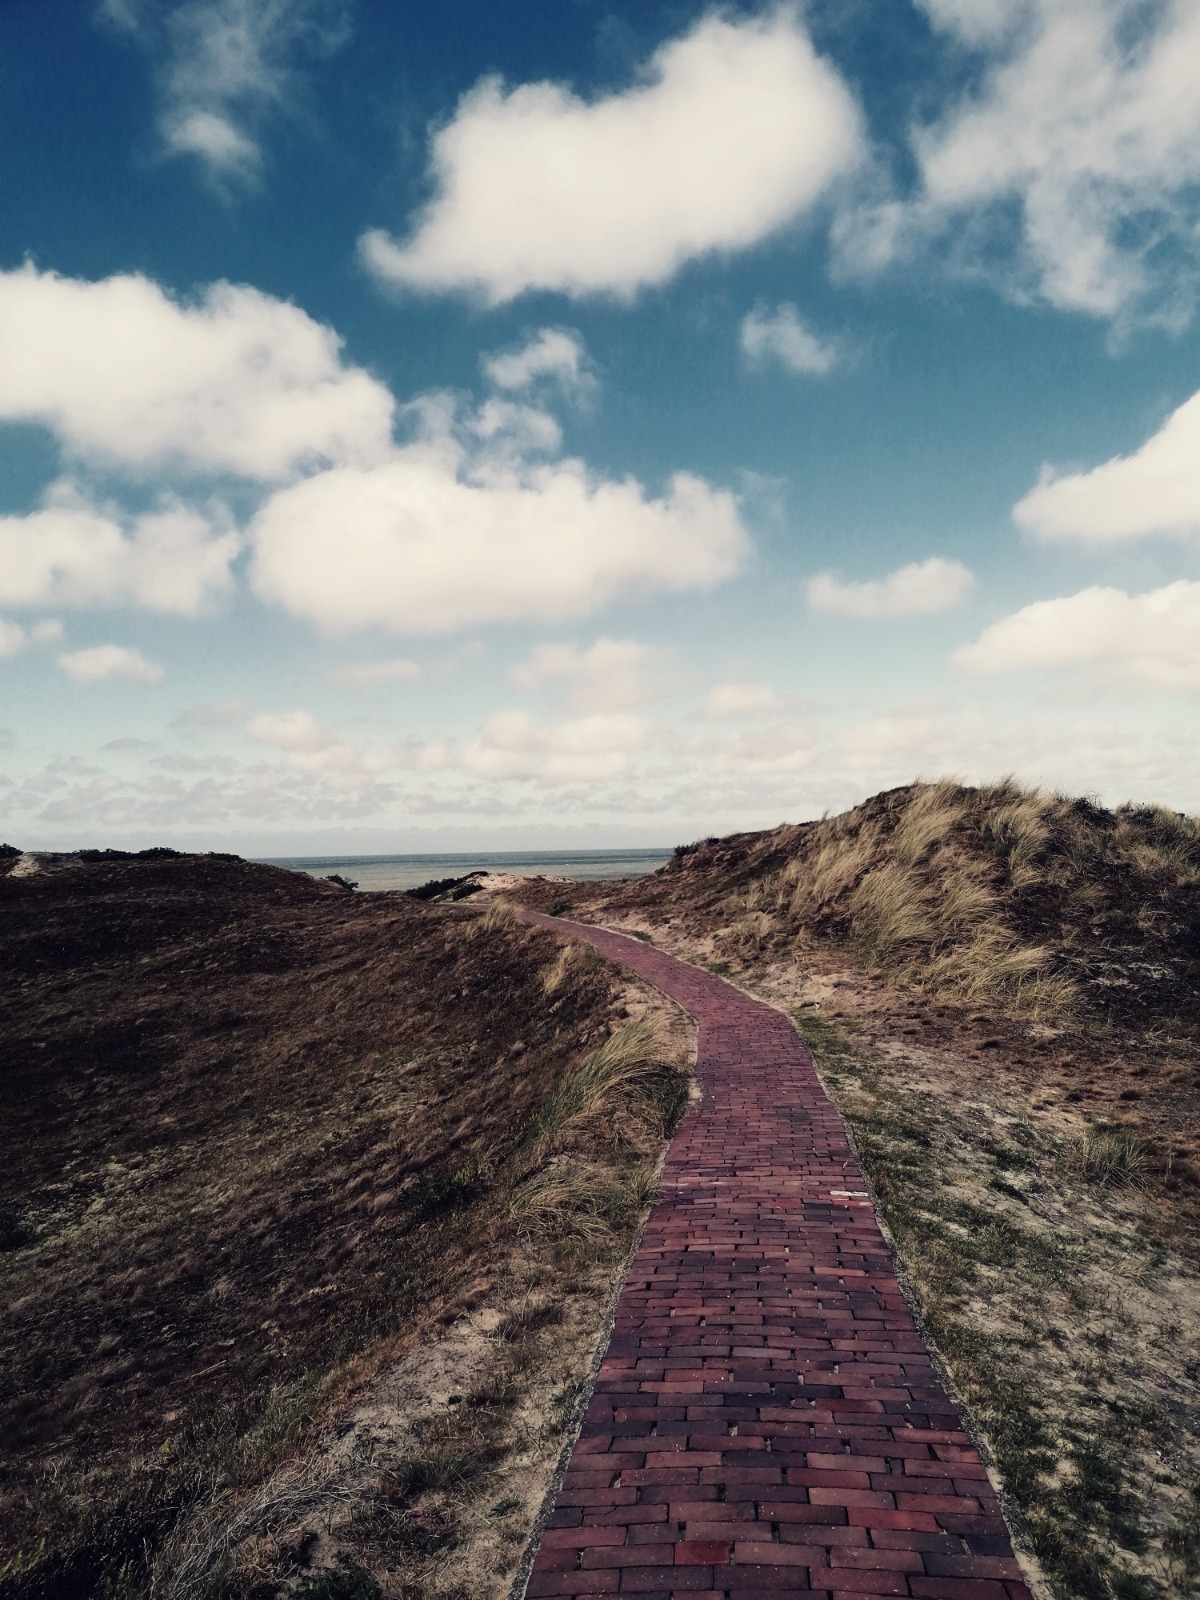 Ein gepflasterter Weg führt über eine bewachsene Düne zum Meer. Am Himmel sind einige weiße Wolken